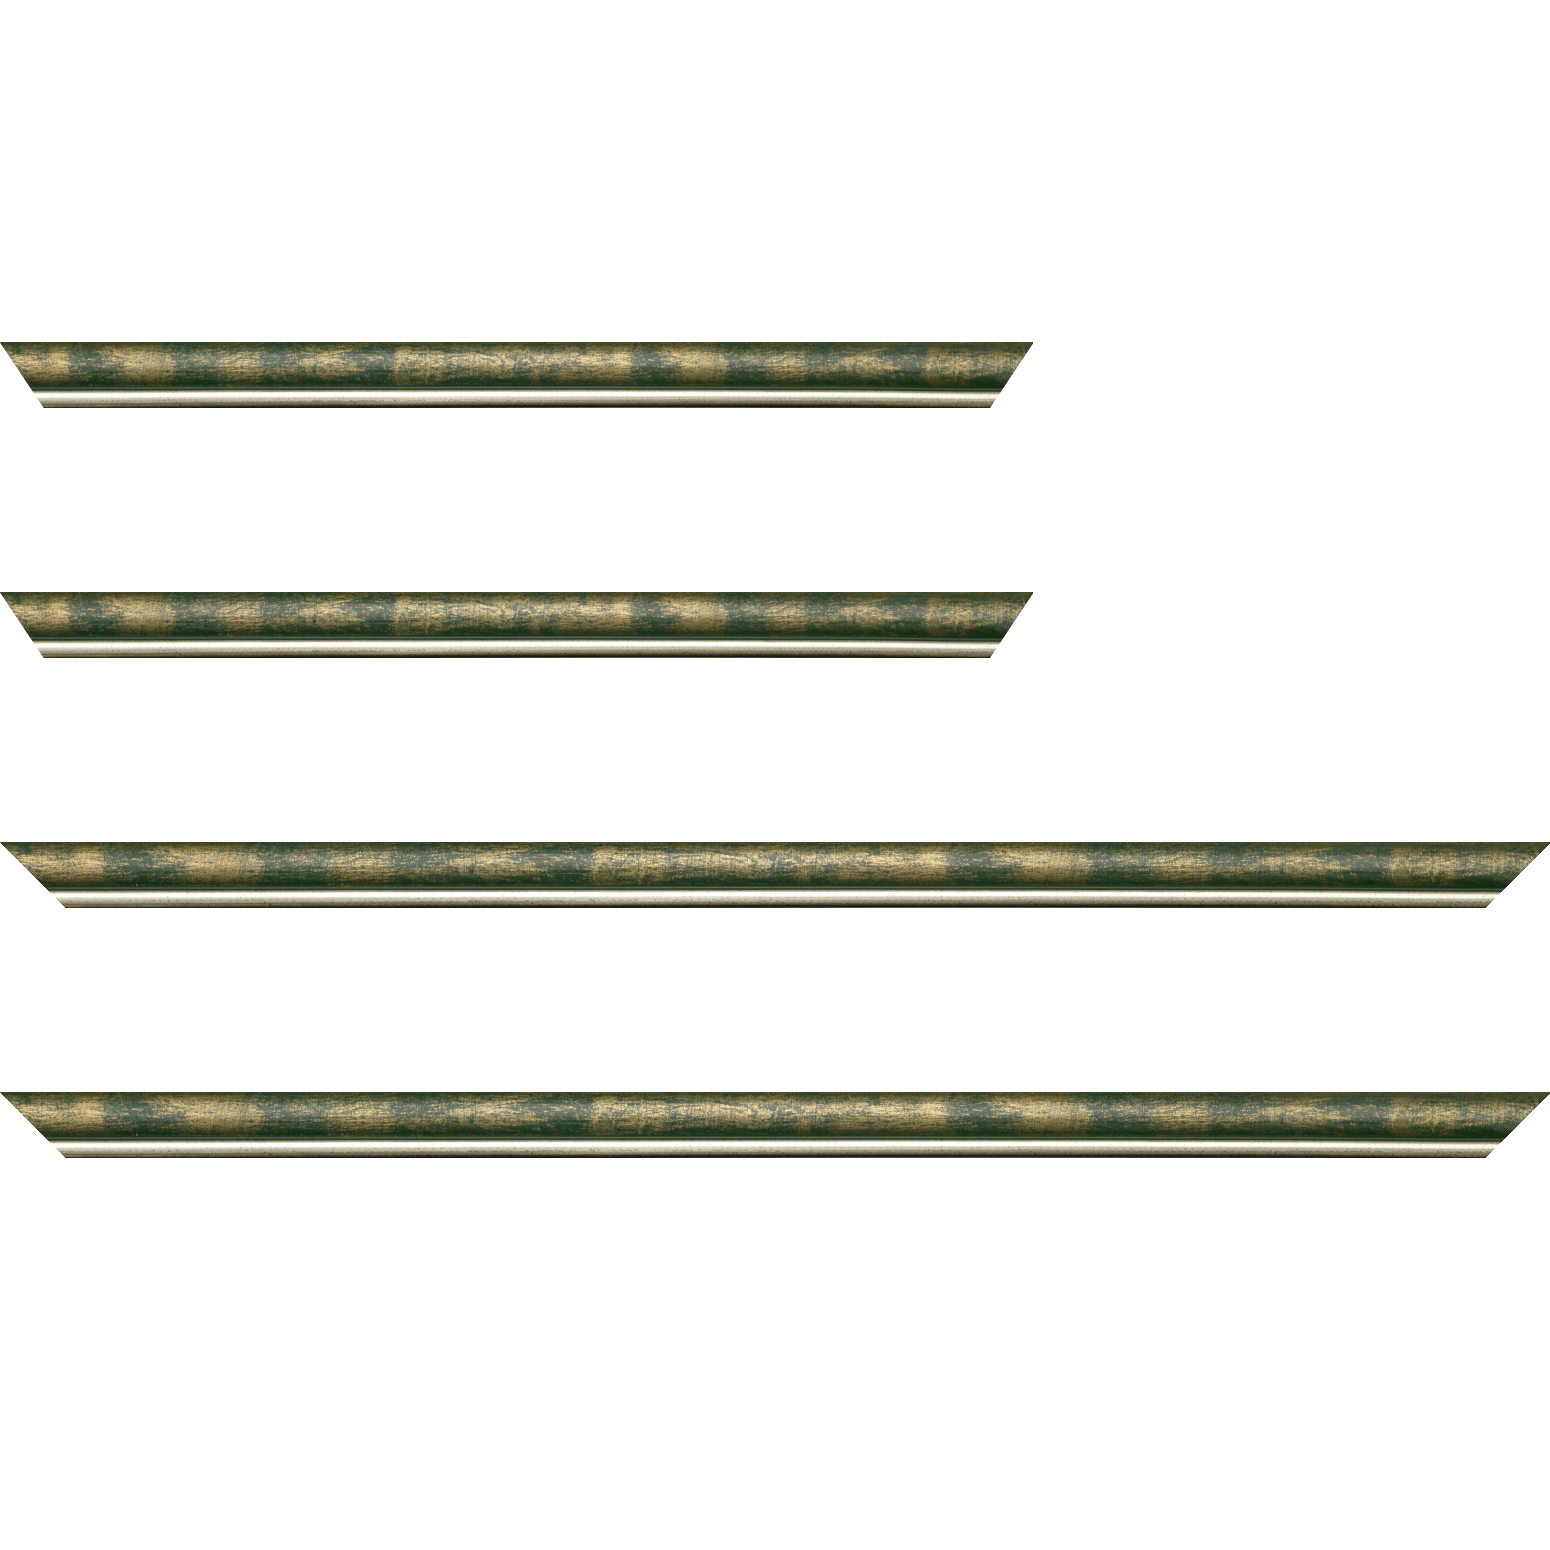 Baguette bois profil arrondi largeur 2.1cm  couleur vert fond or filet argent chaud - 34x40